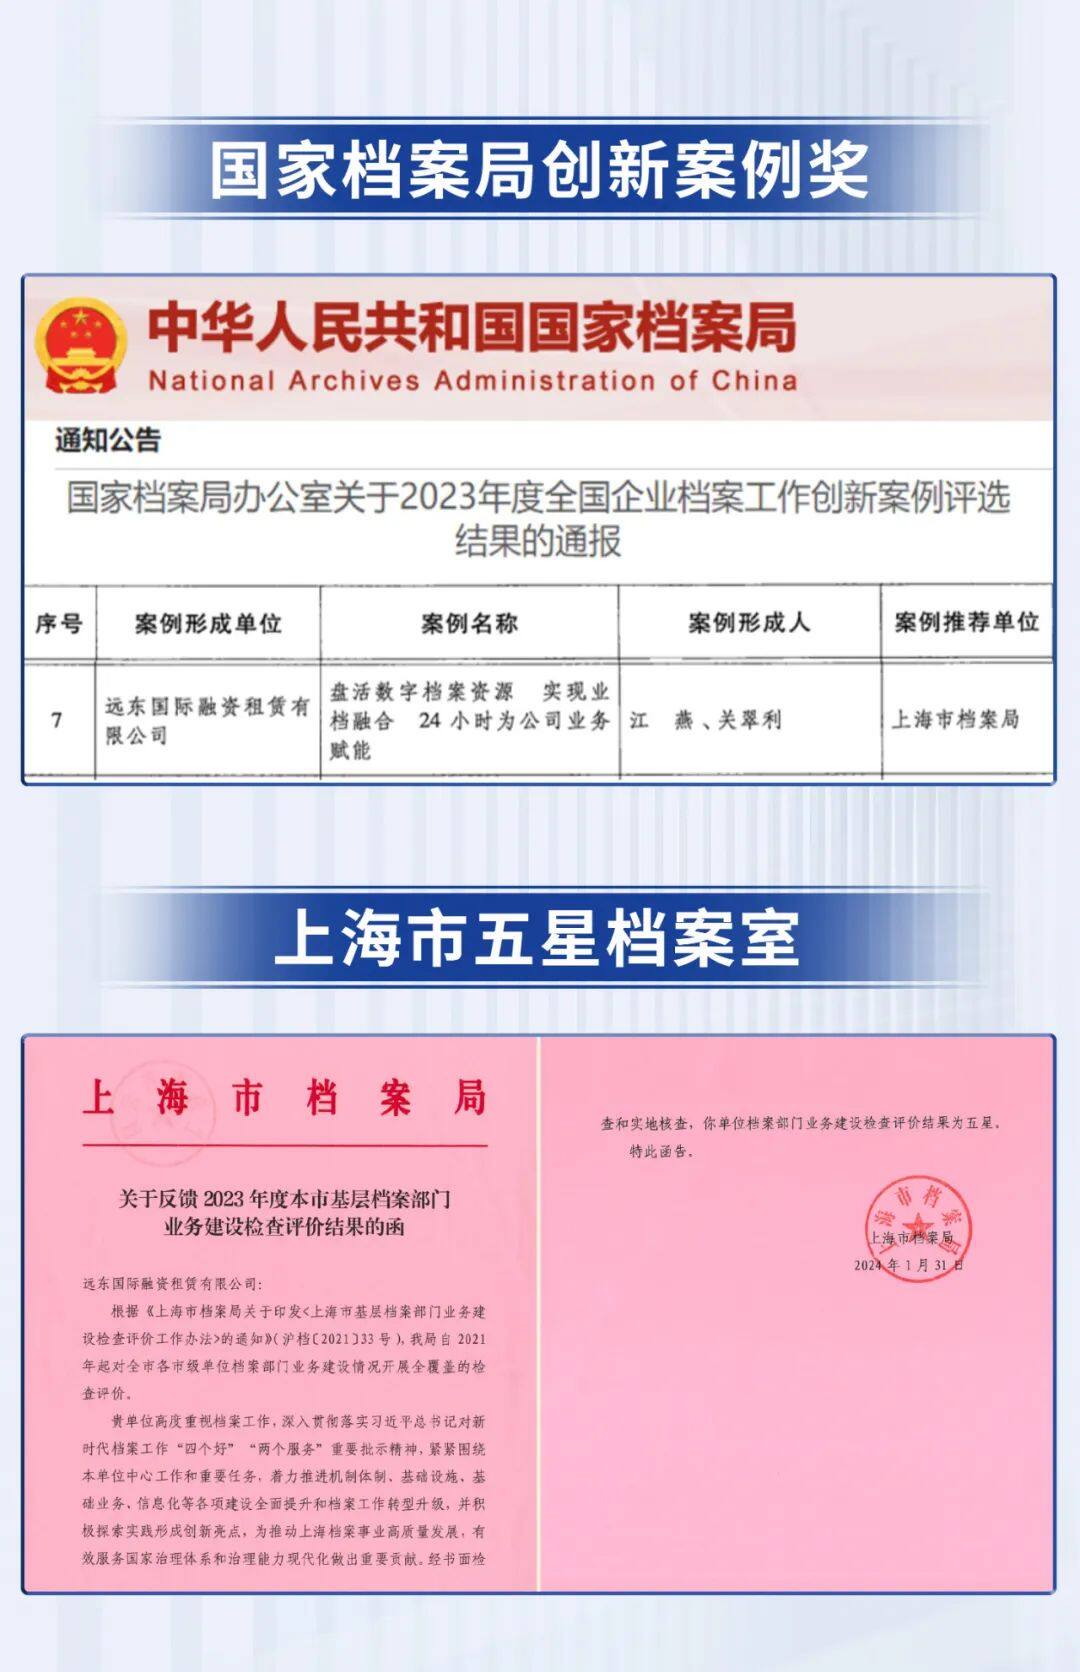 远东宏信租赁获国家档案局“立异案例”、立异案例上海市档案局“五星档案室”称谓